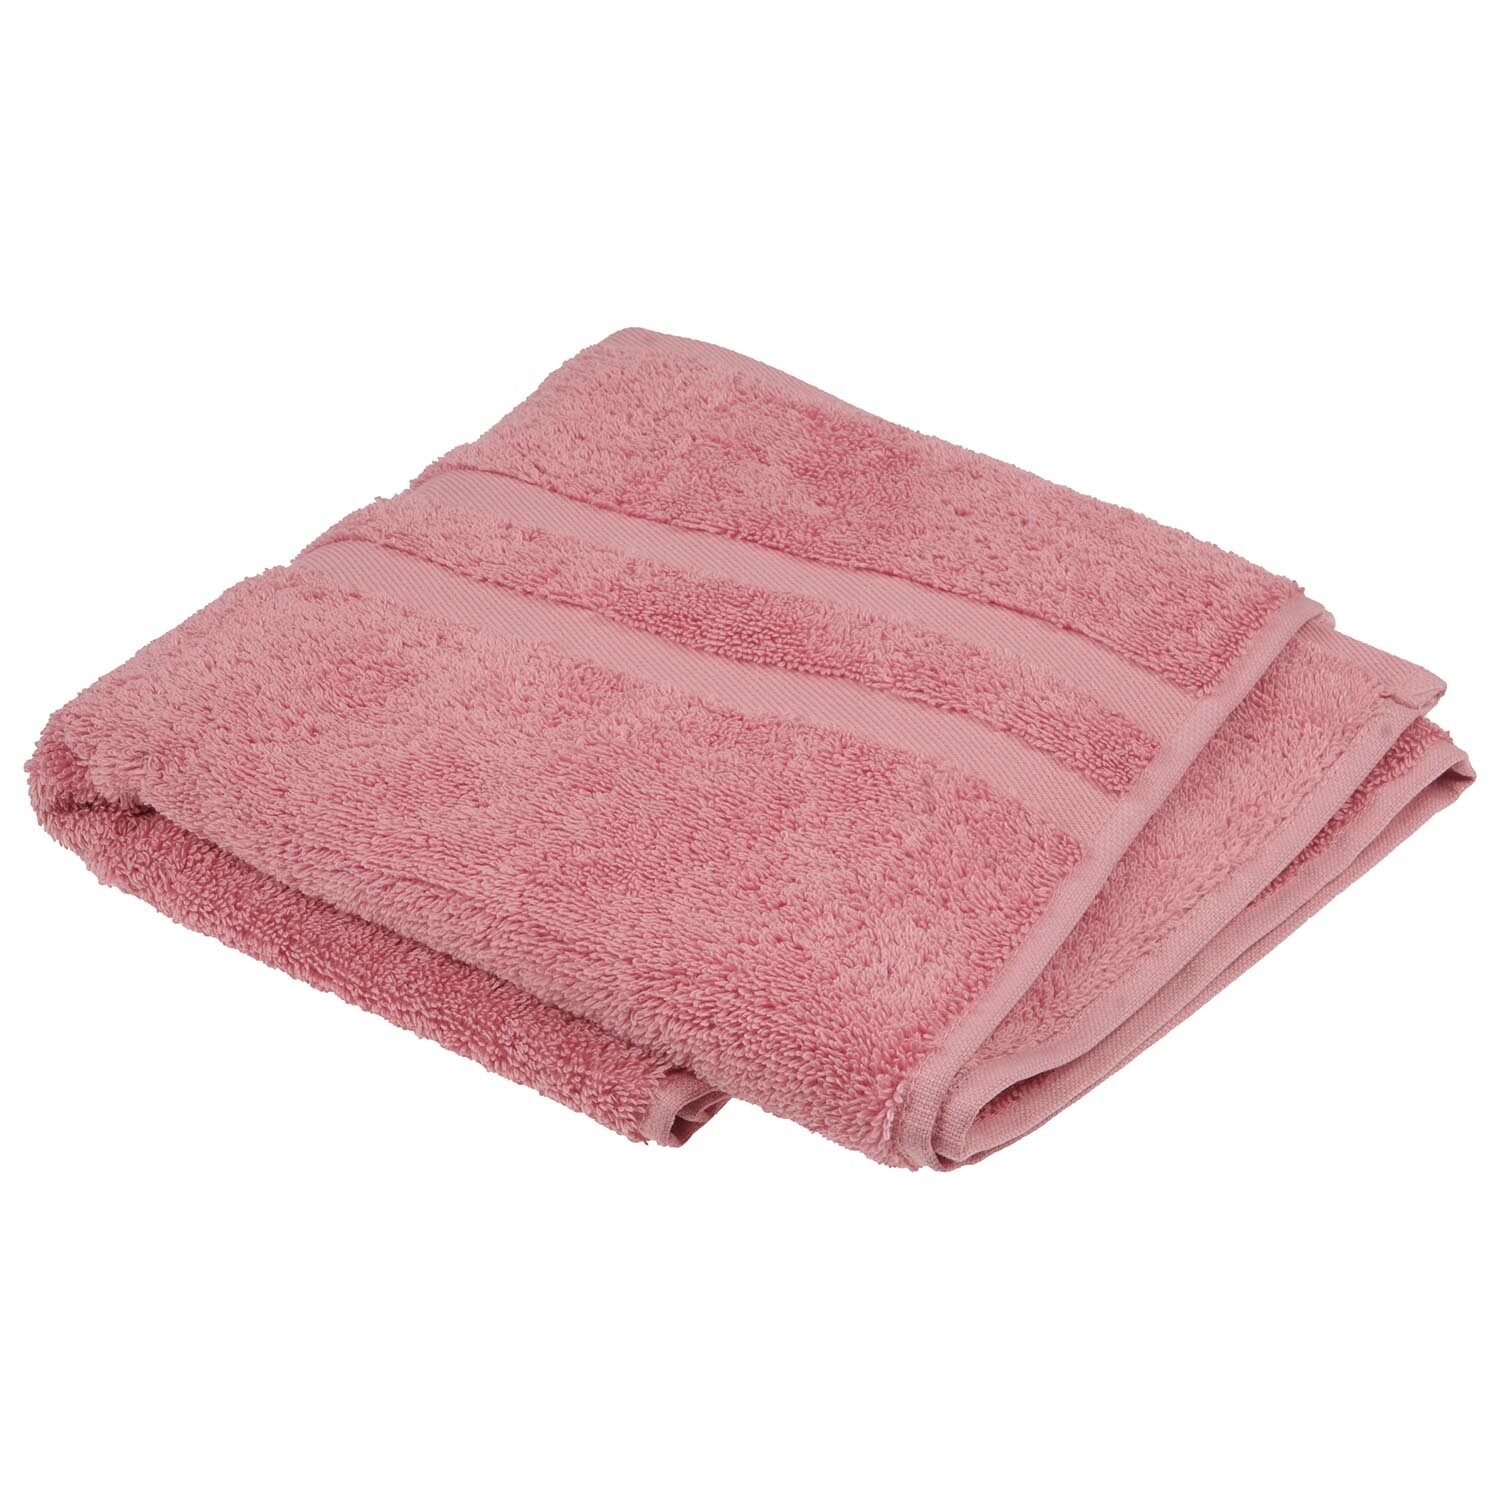 Divante Hand Towel  - Grey Image 4